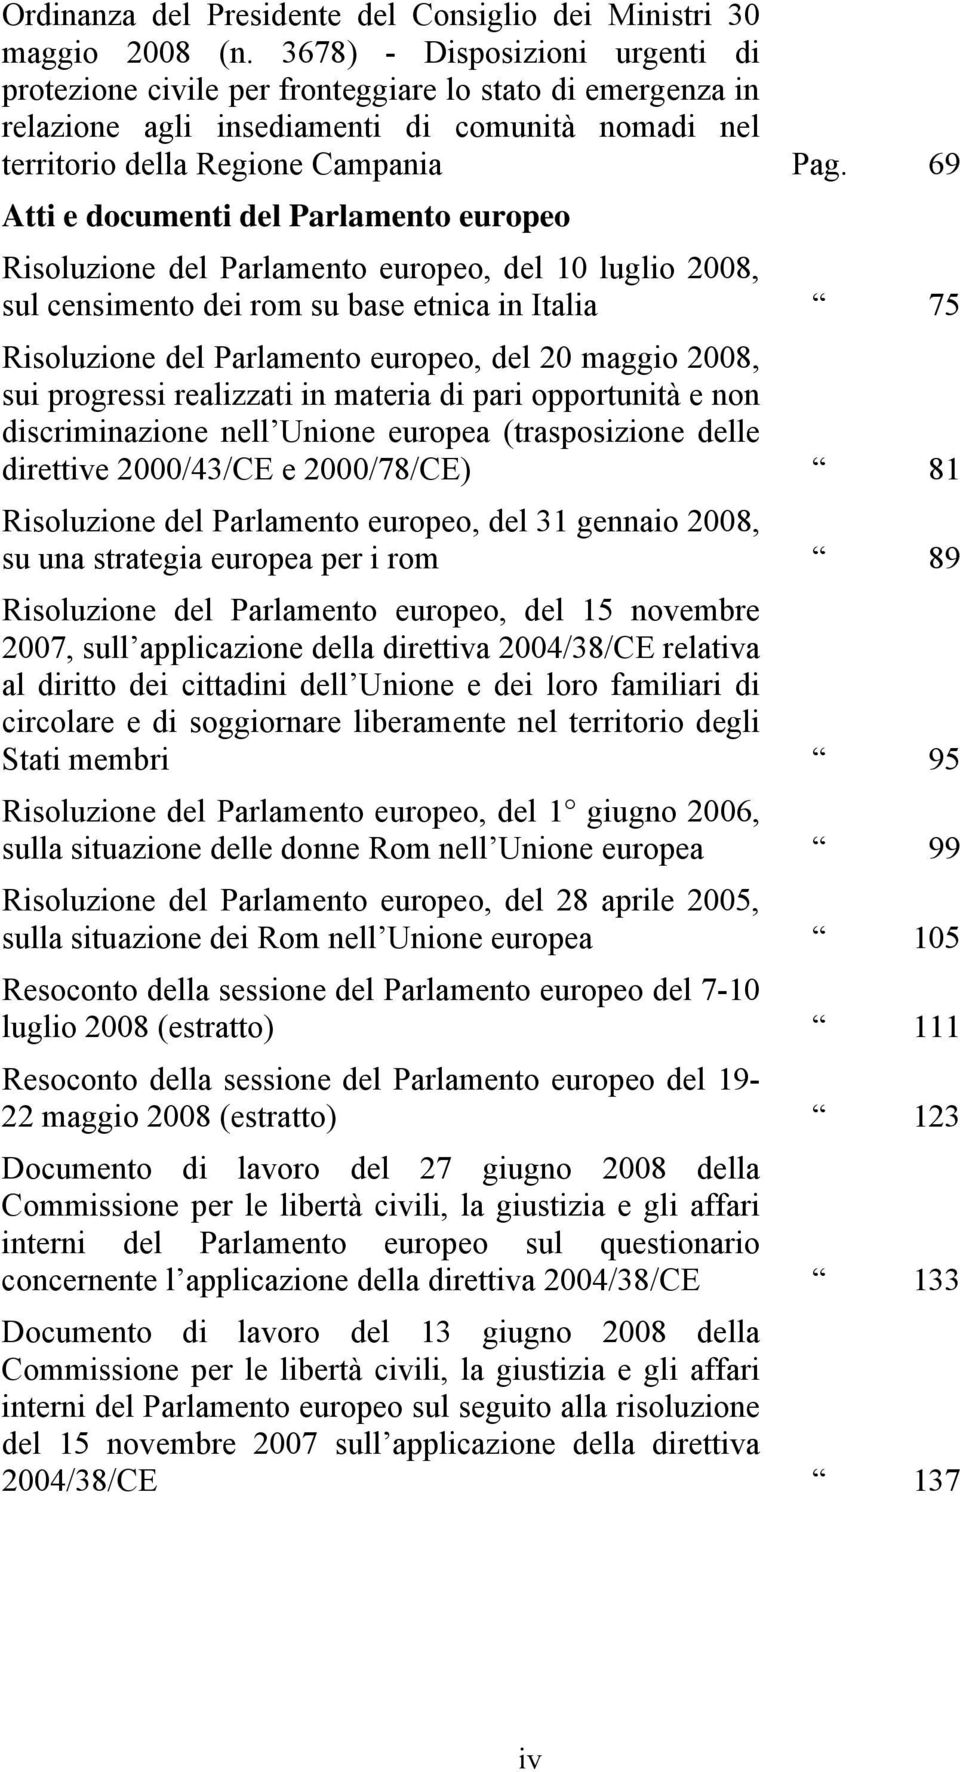 69 Atti e documenti del Parlamento europeo Risoluzione del Parlamento europeo, del 10 luglio 2008, sul censimento dei rom su base etnica in Italia 75 Risoluzione del Parlamento europeo, del 20 maggio